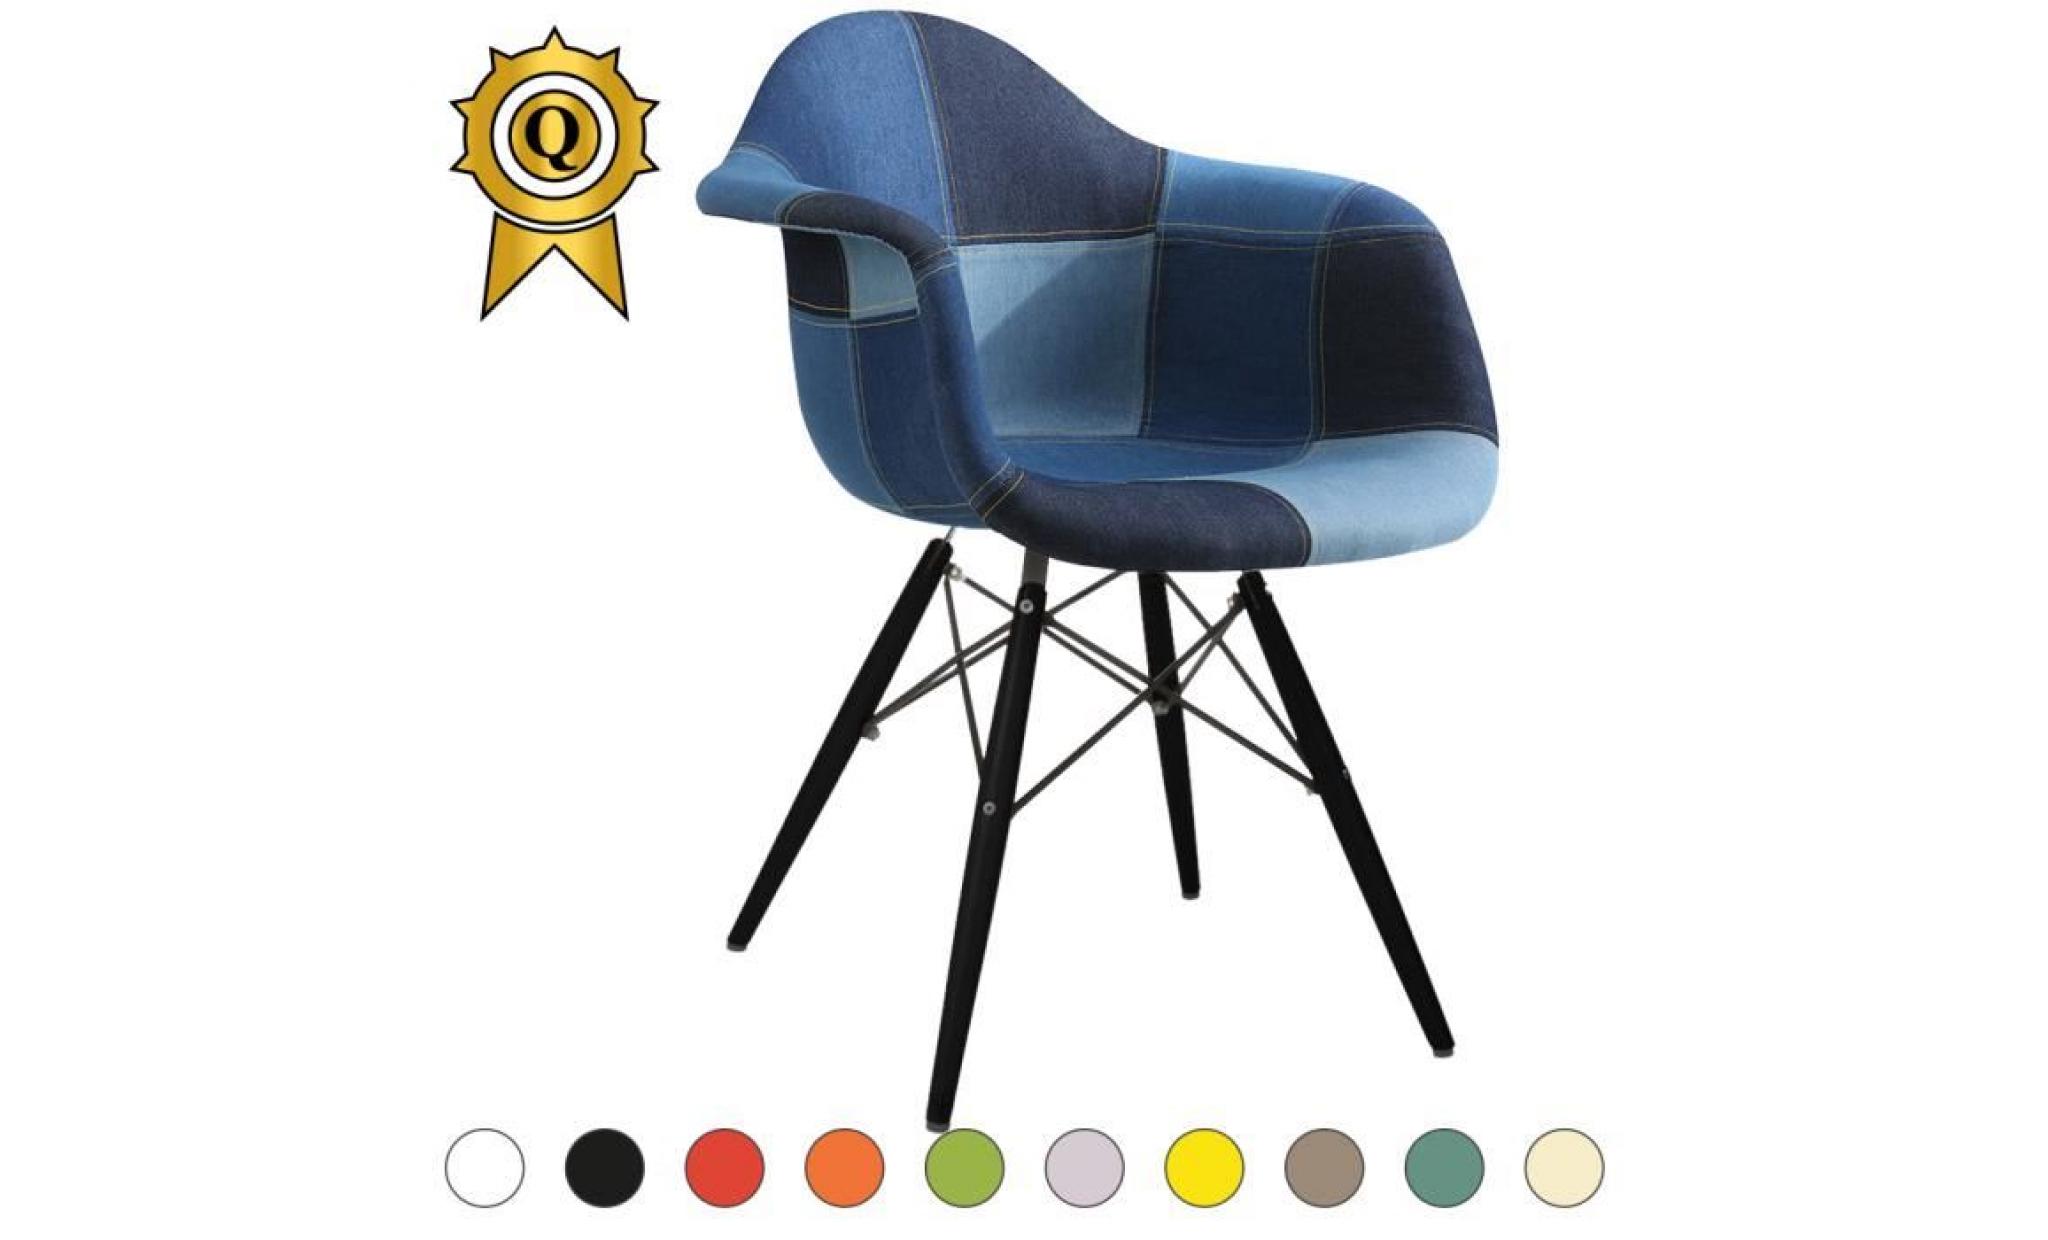 1 x fauteuil design retro inspiration eames daw pieds en bois noir assise silver mobistyl®